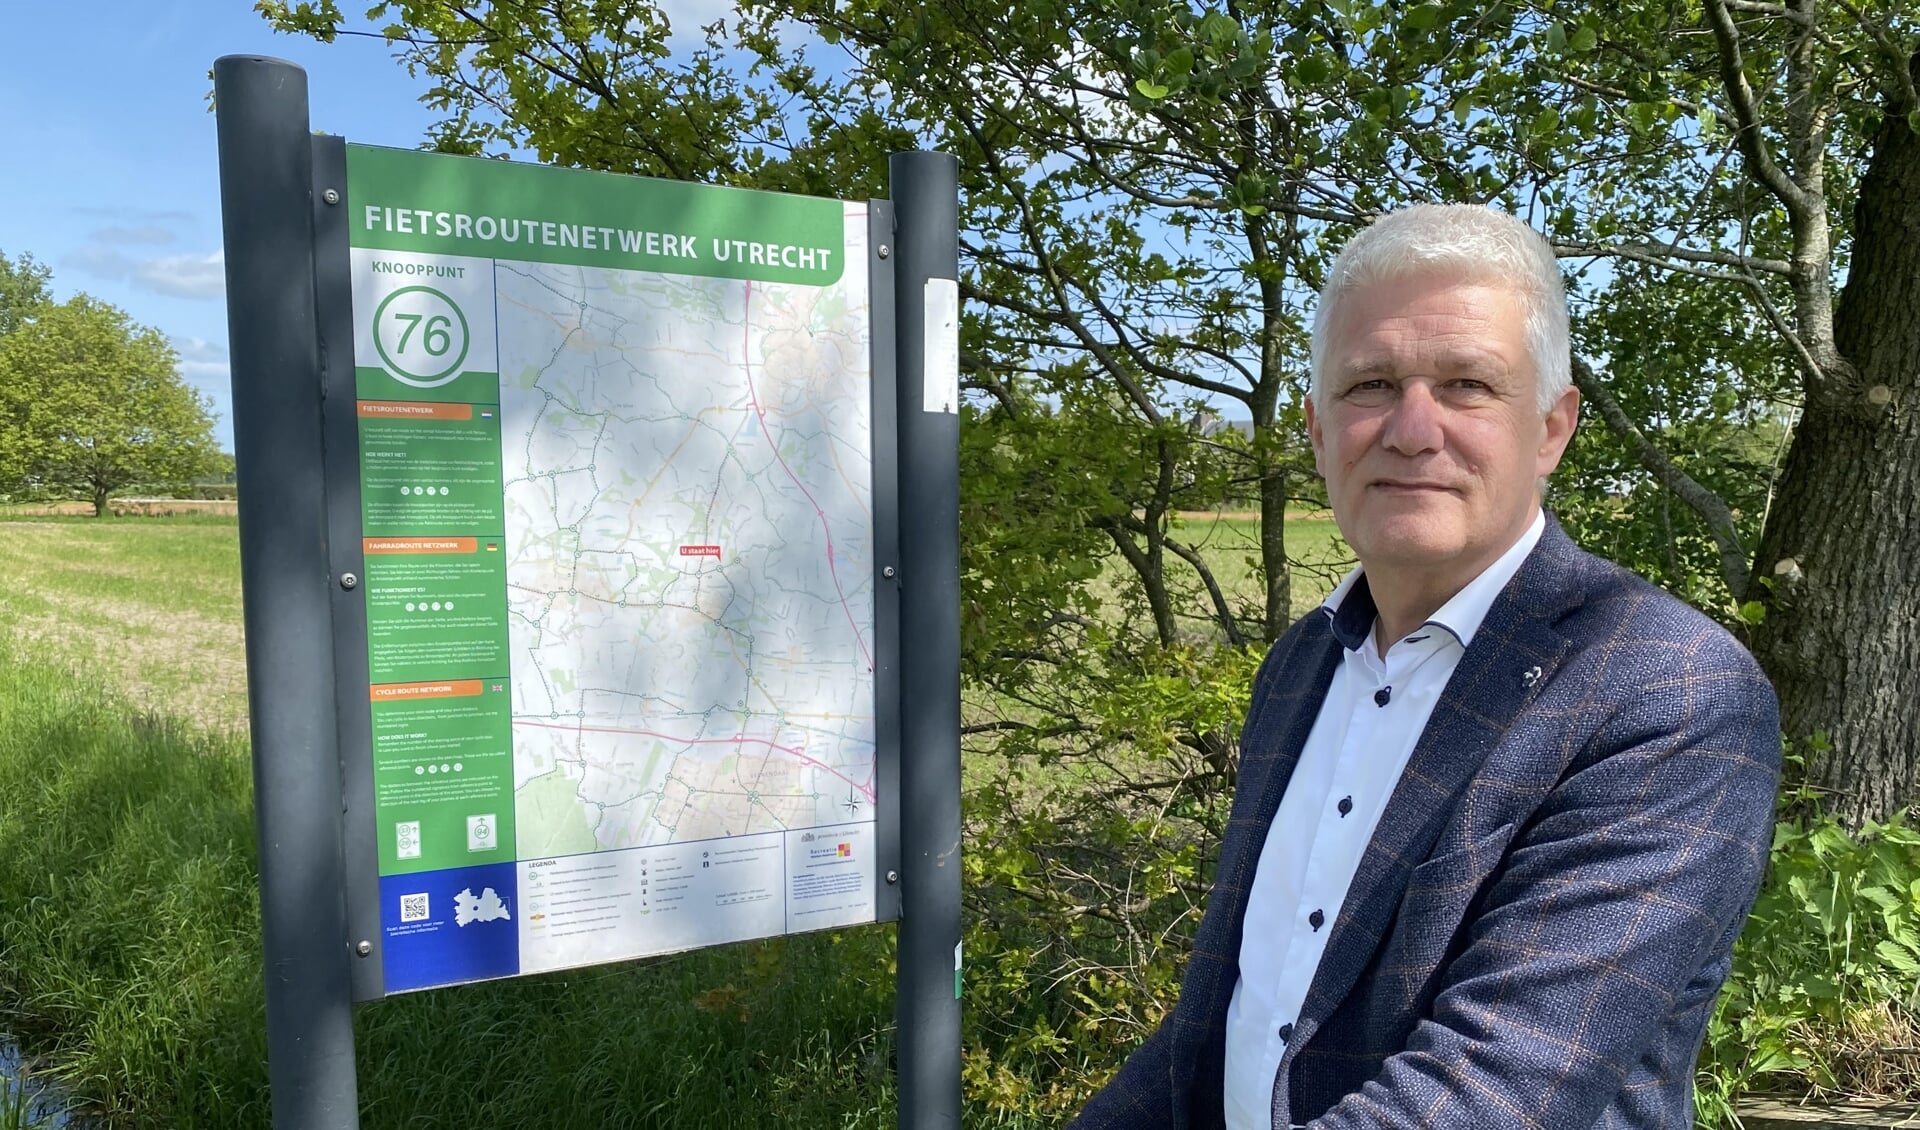 Wethouder Henk van der Schoor bij een bord van het Fietsroutenetwerk Utrecht bij het dijkje naar Fort Daatselaar.